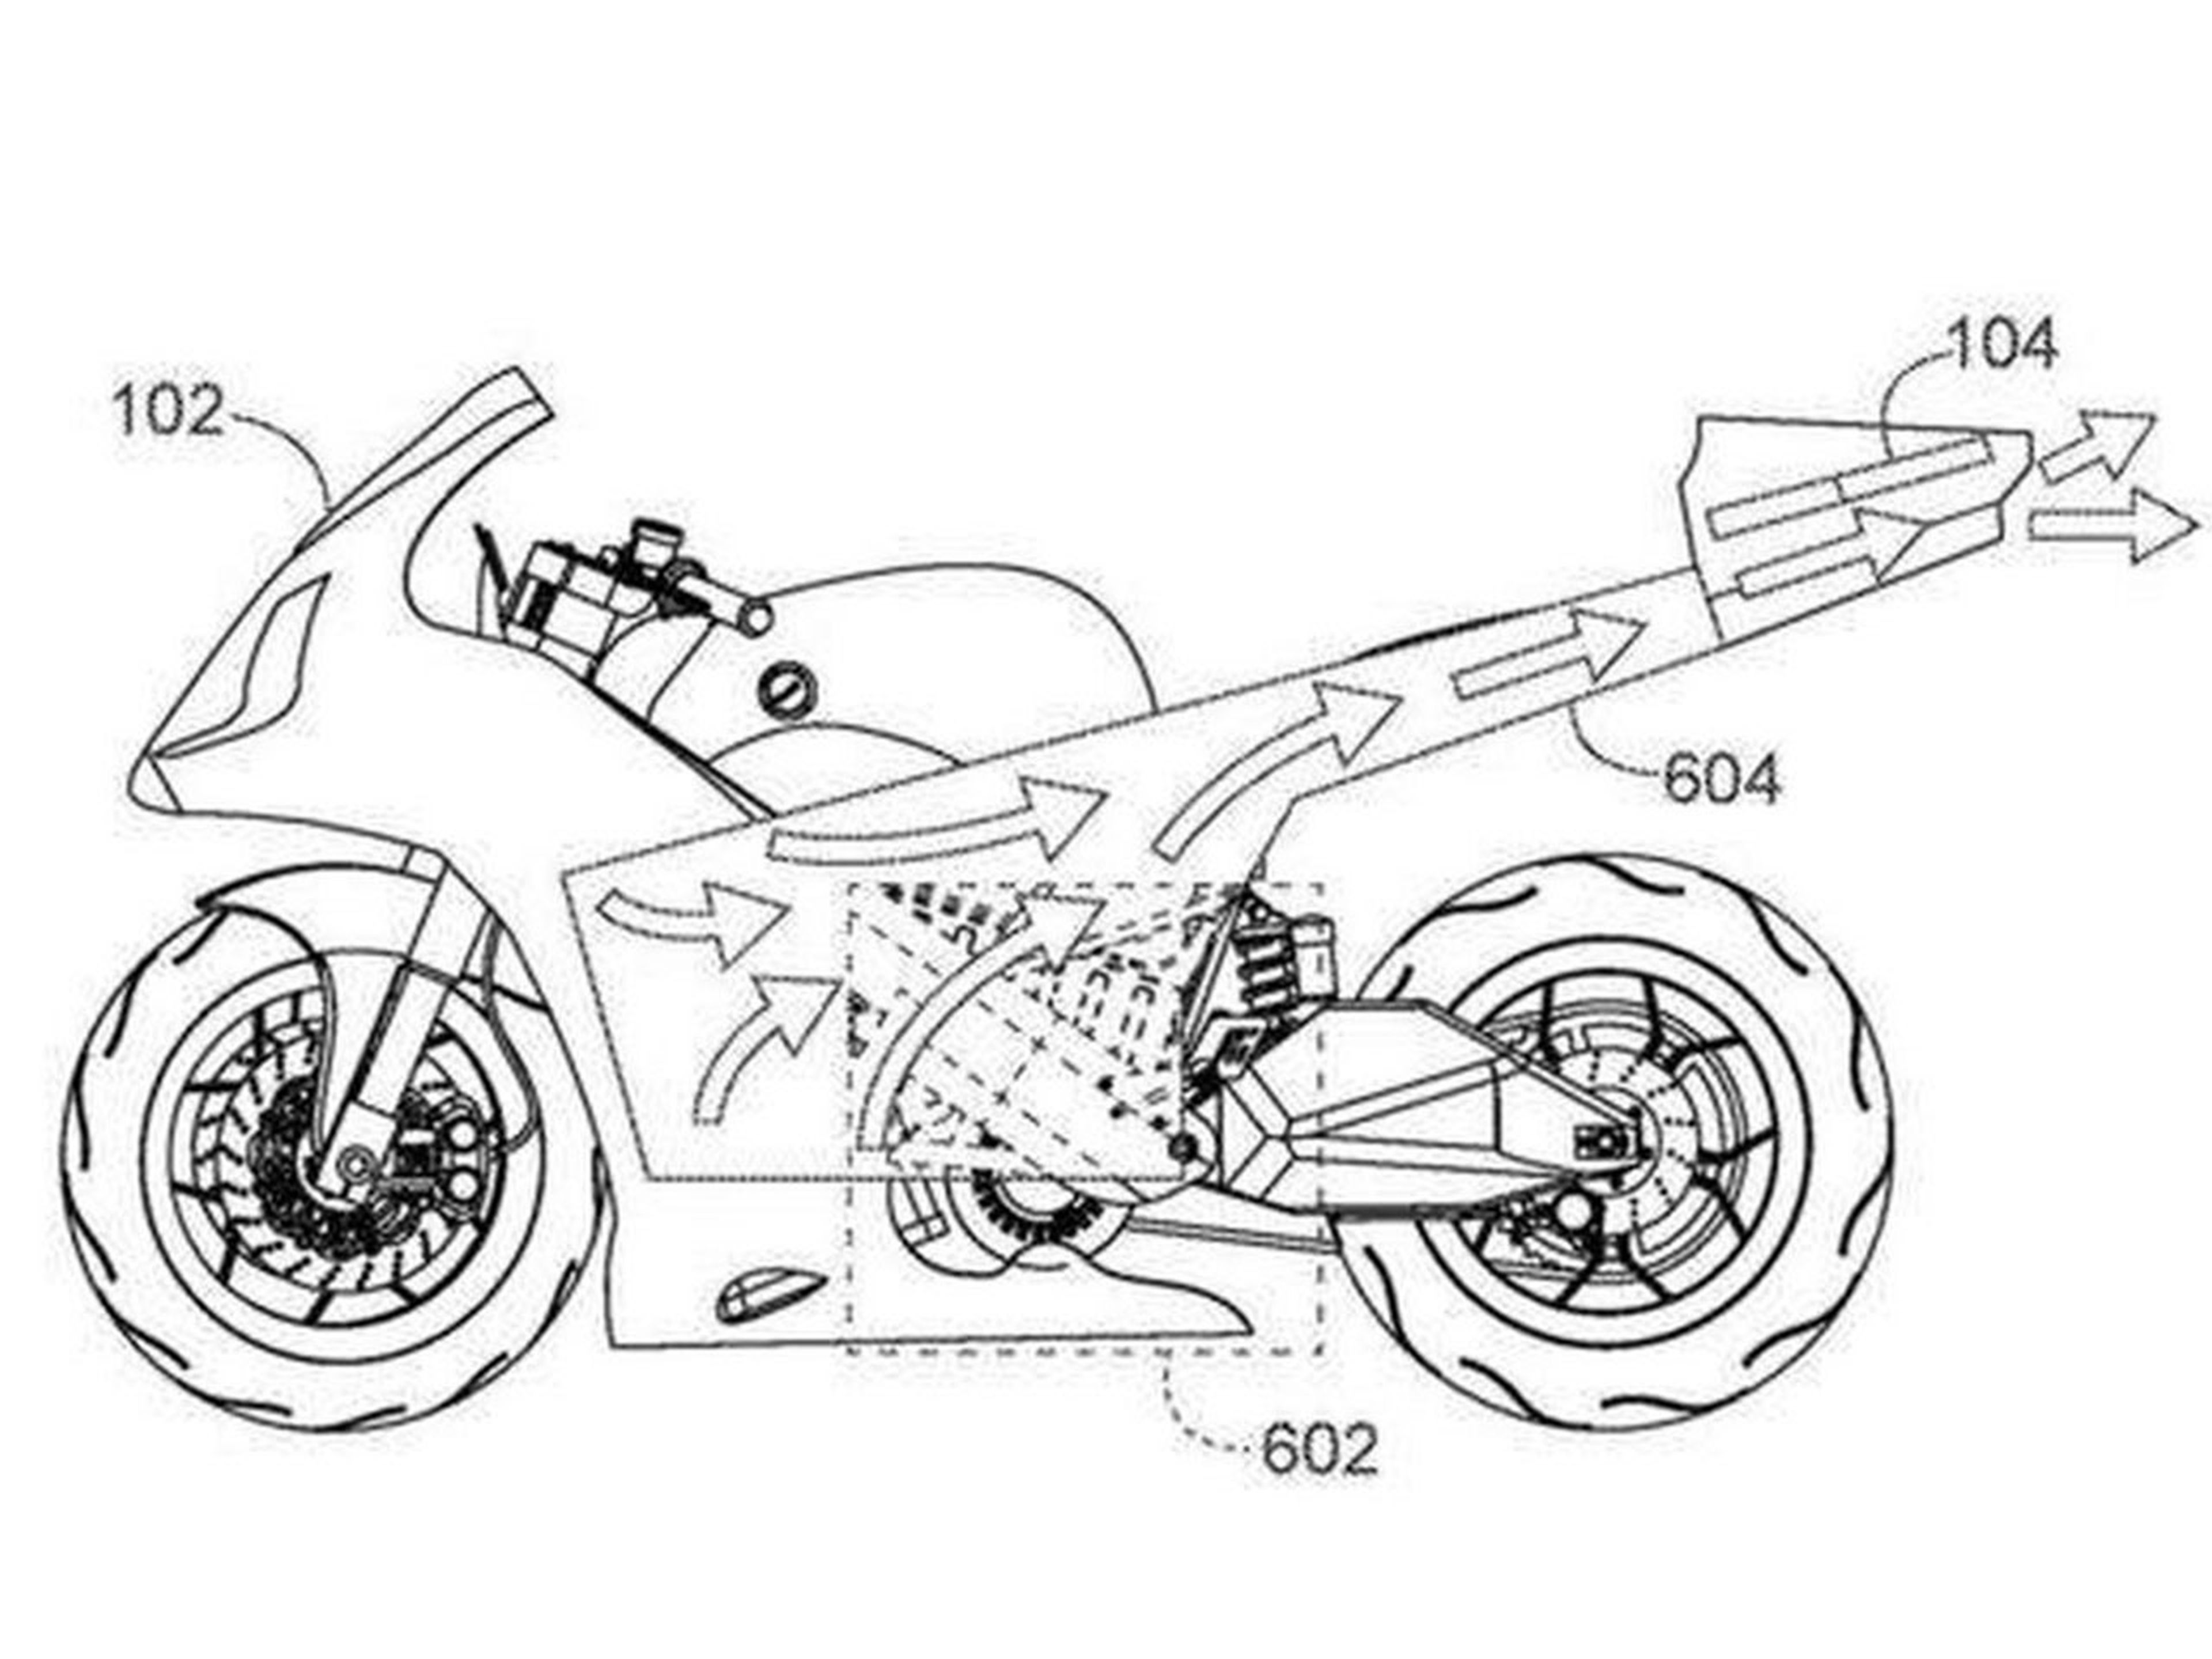 Patente Honda motocicleta eléctrica con dron